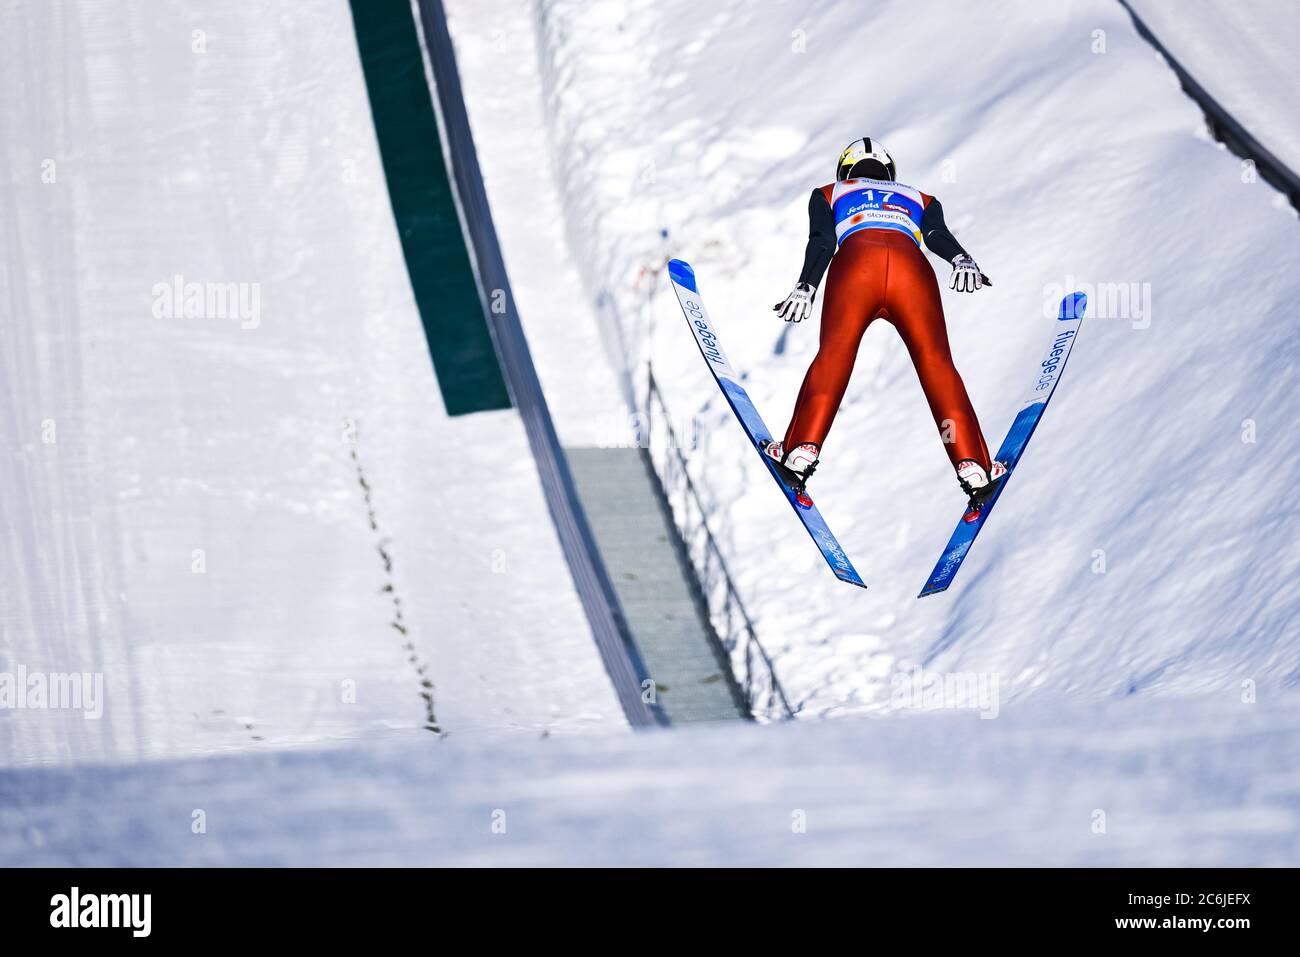 Salti da una grande collina ai campionati del mondo nordico di Seefeld, Austria, 2019. Foto Stock